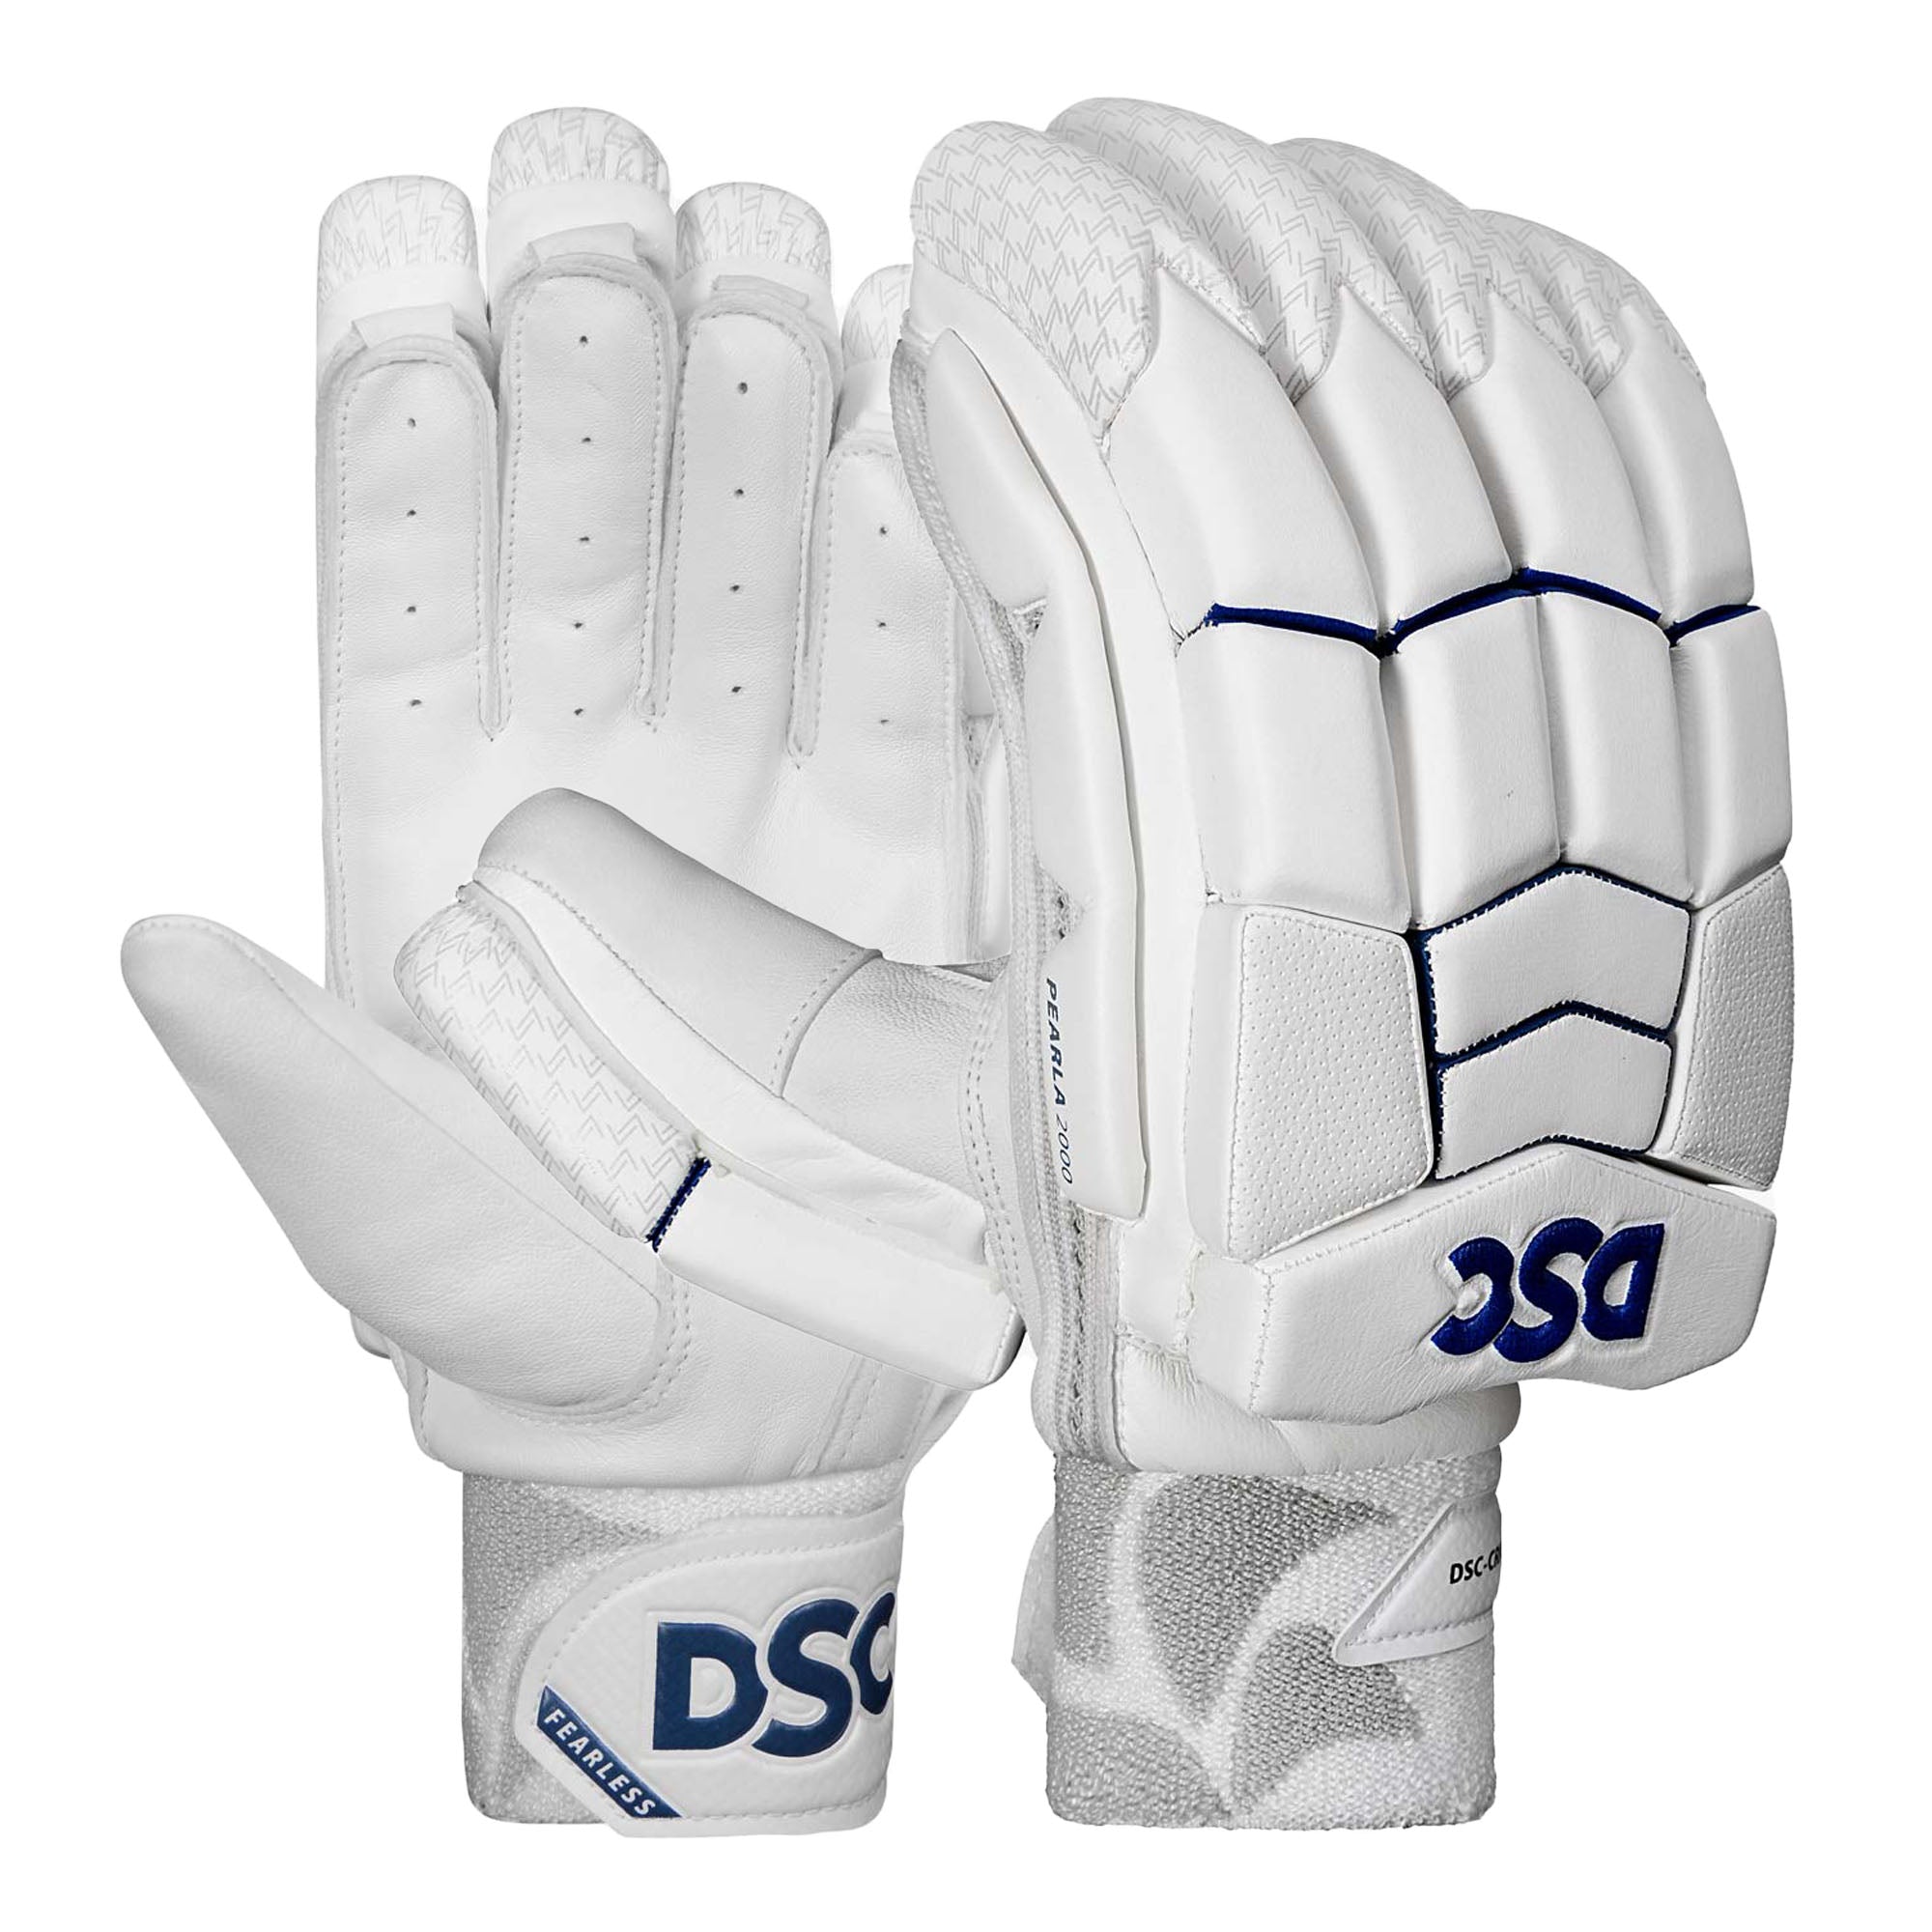 Stag Sports Online Shop For DSC Cricket Batting Gloves